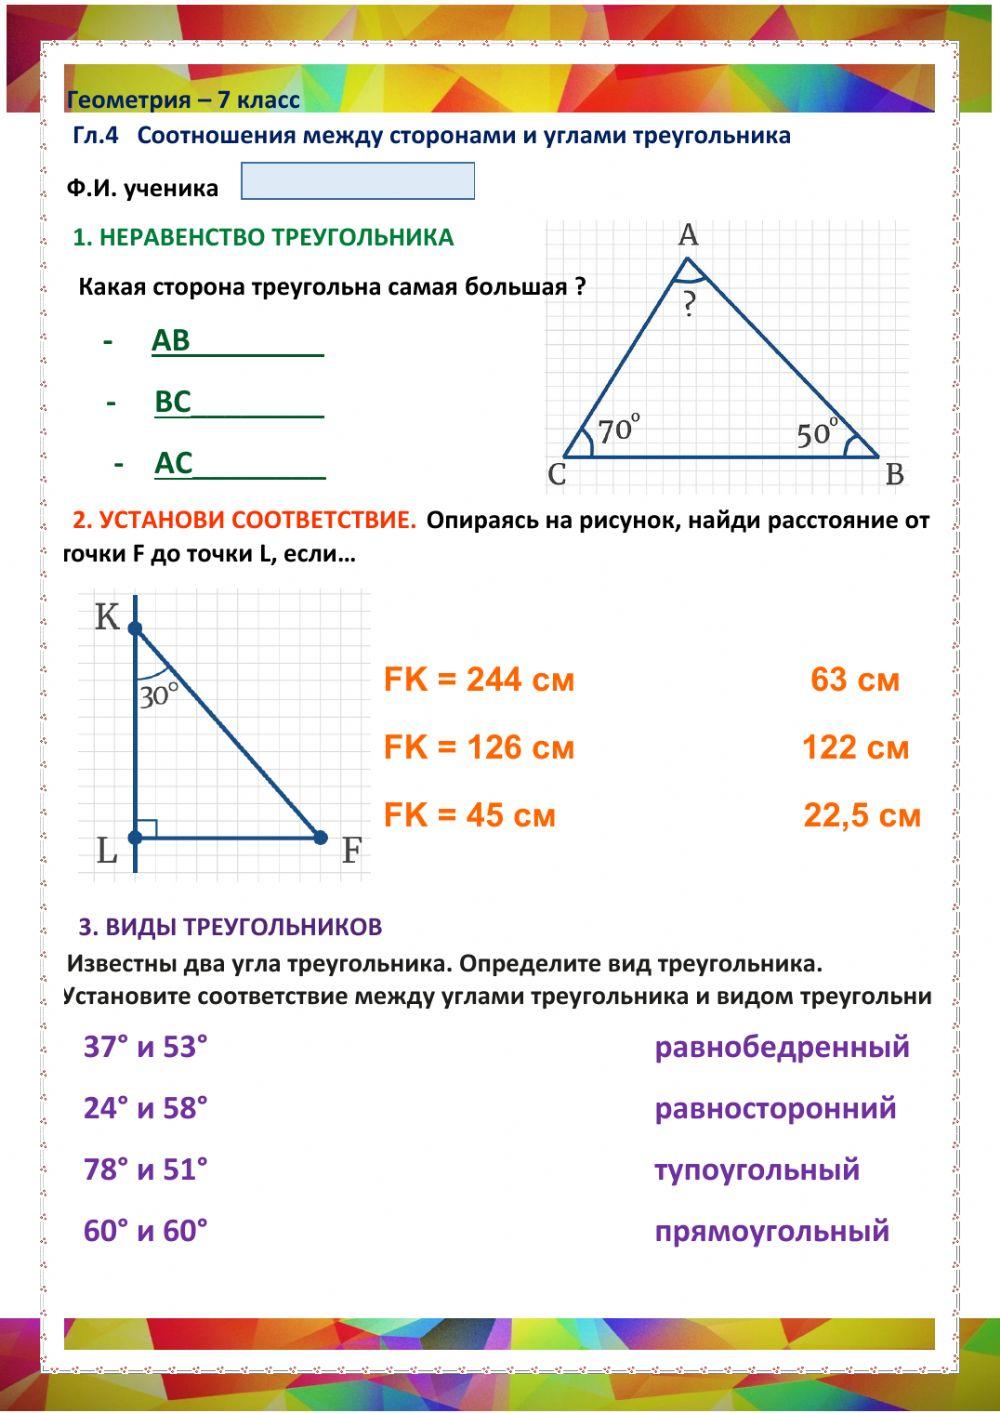 ГЕО-7, Урок 4, Соотношения в треугольнике